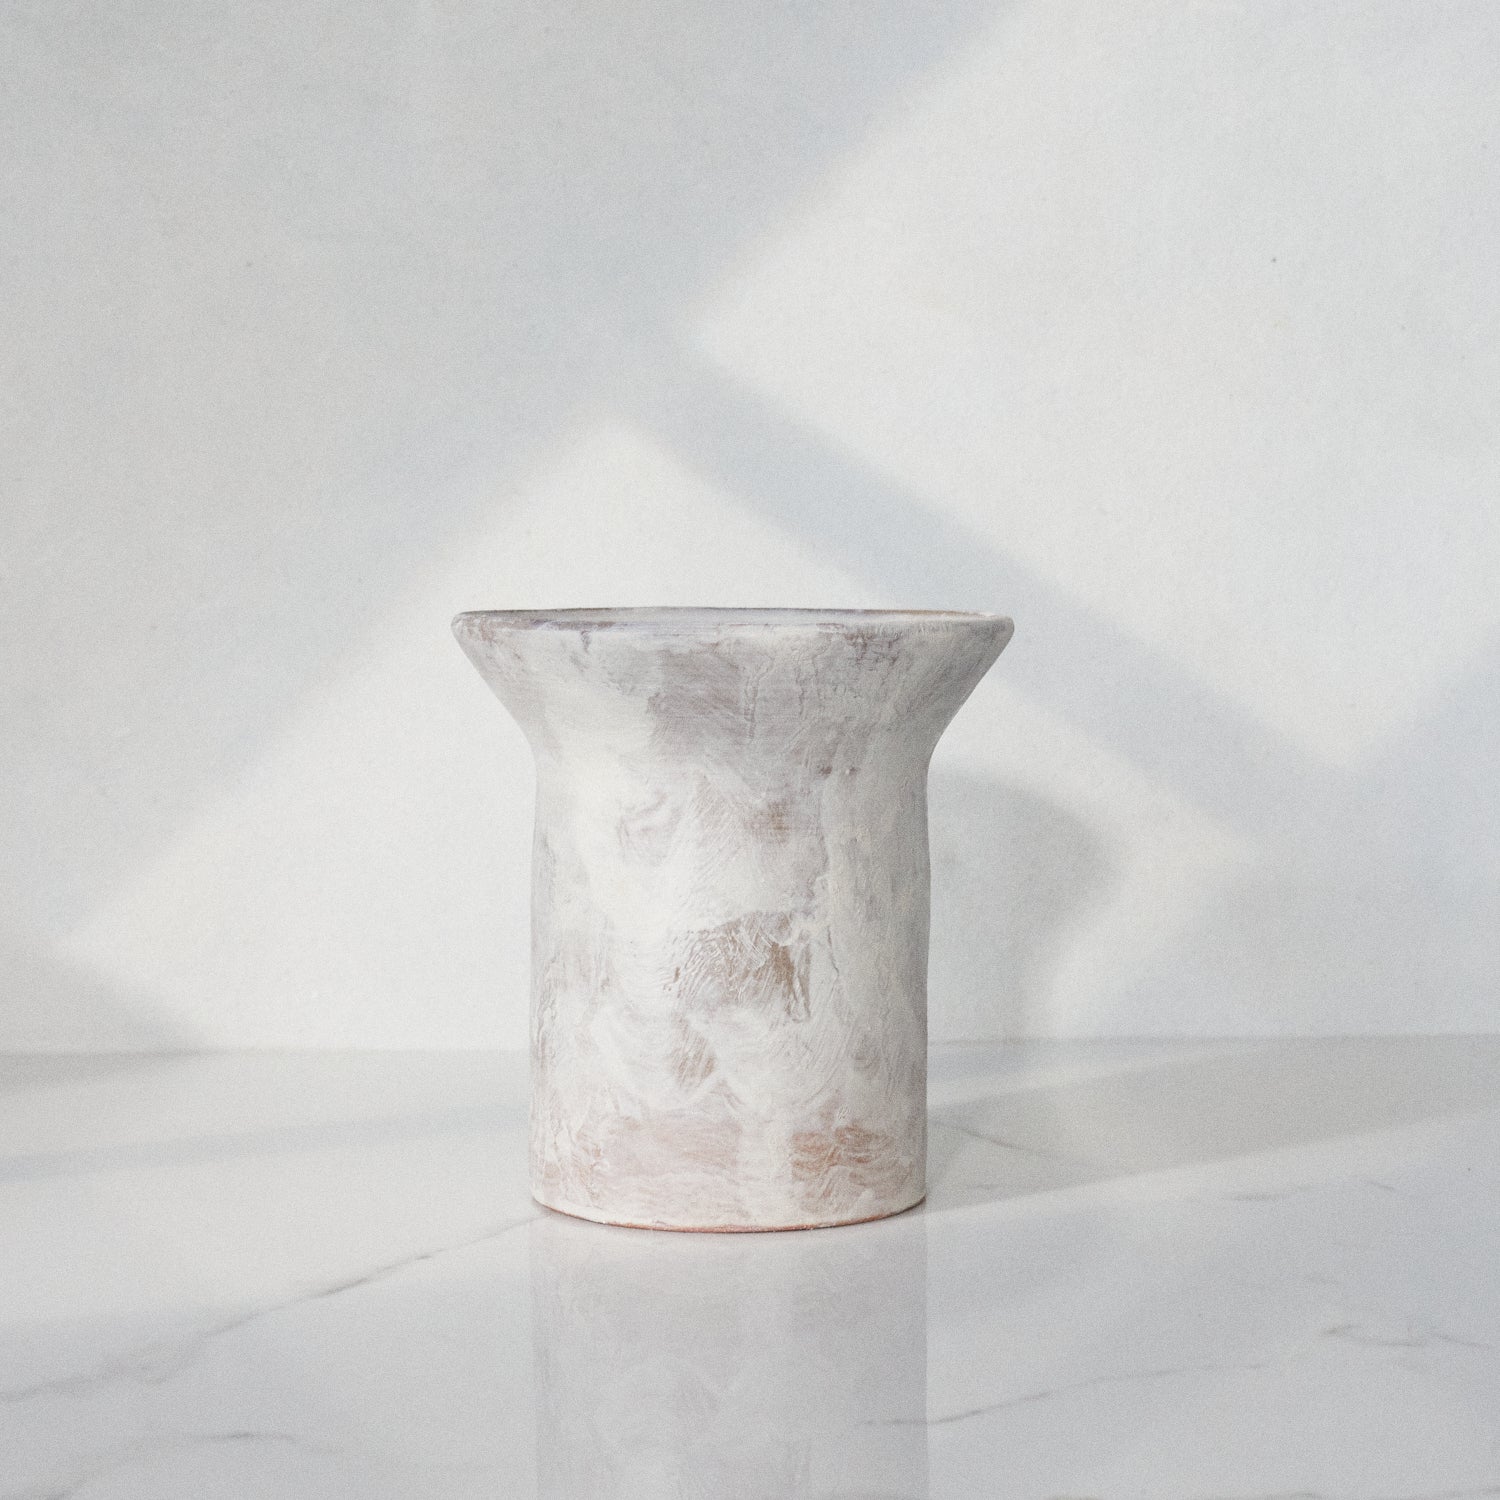 The Medium Lip Vase